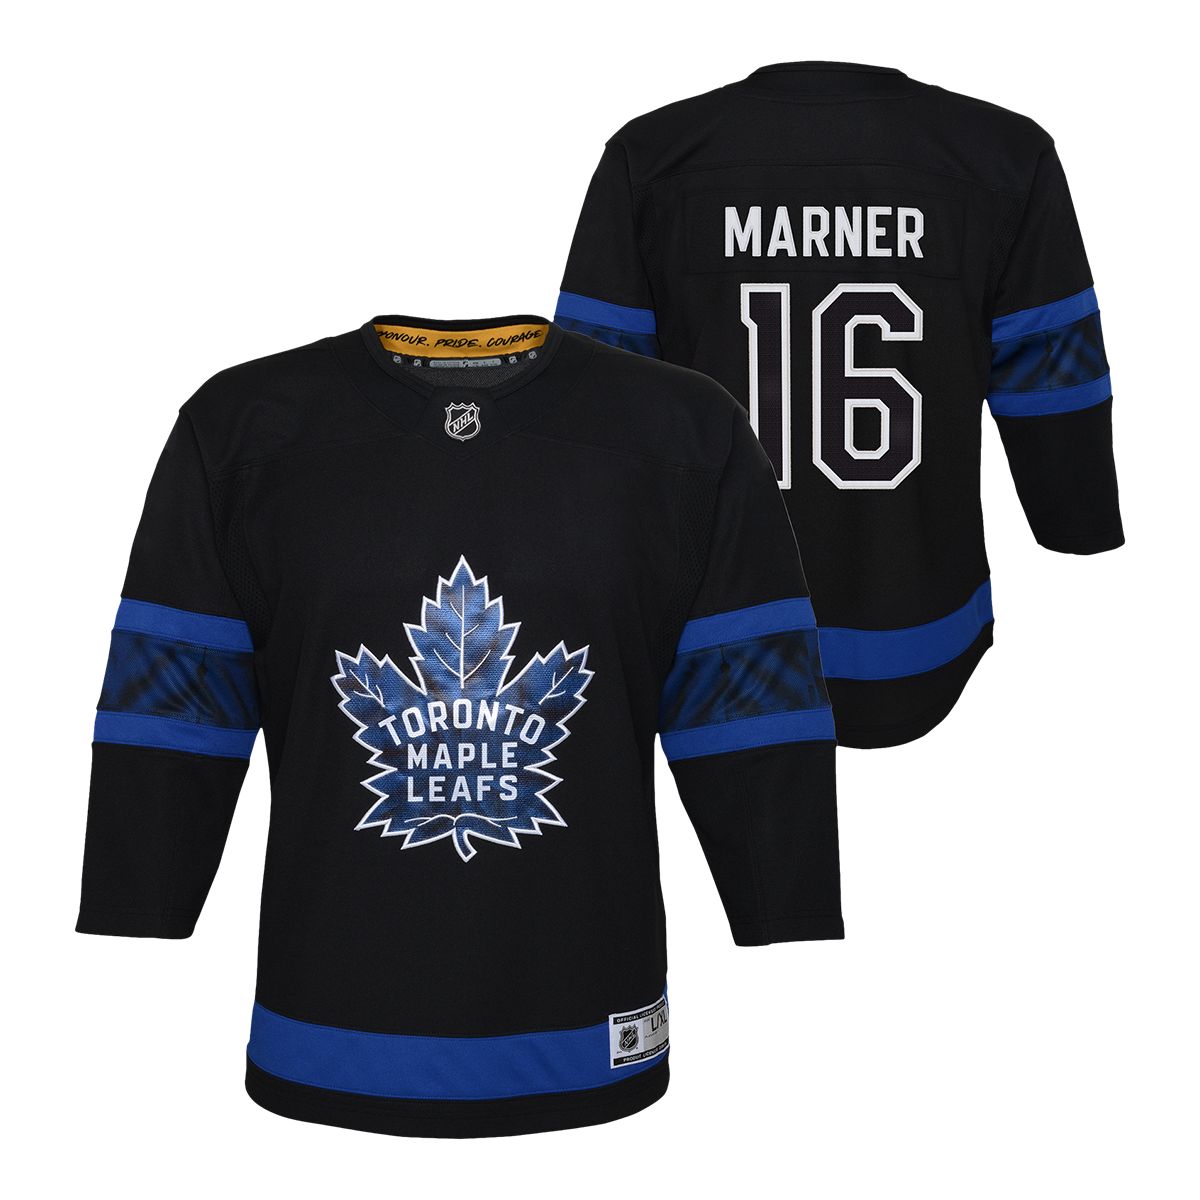 Justin Bieber Designs Alternate 'Next Gen' Jersey for the Toronto Maple  Leafs